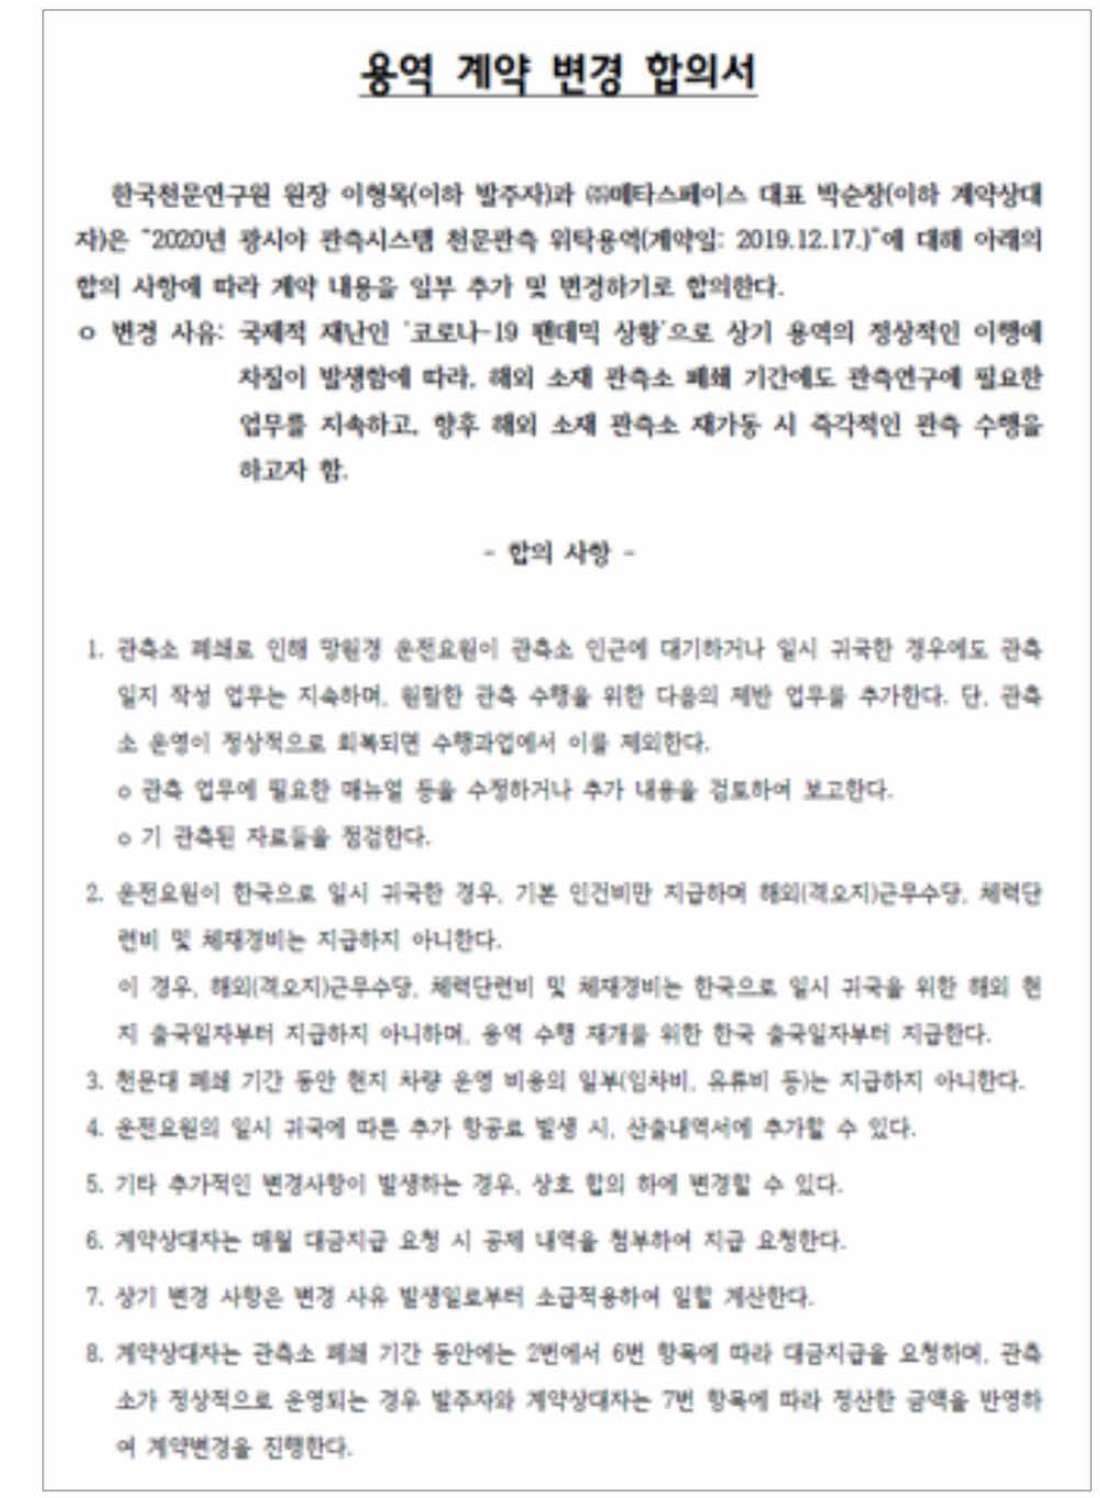 한국천문연구원-(주)메타스페이스 간 “광시야 관측 용역”변경계약서(2020년 4월 29일)에 첨부된 용역 계약 변경 합의서